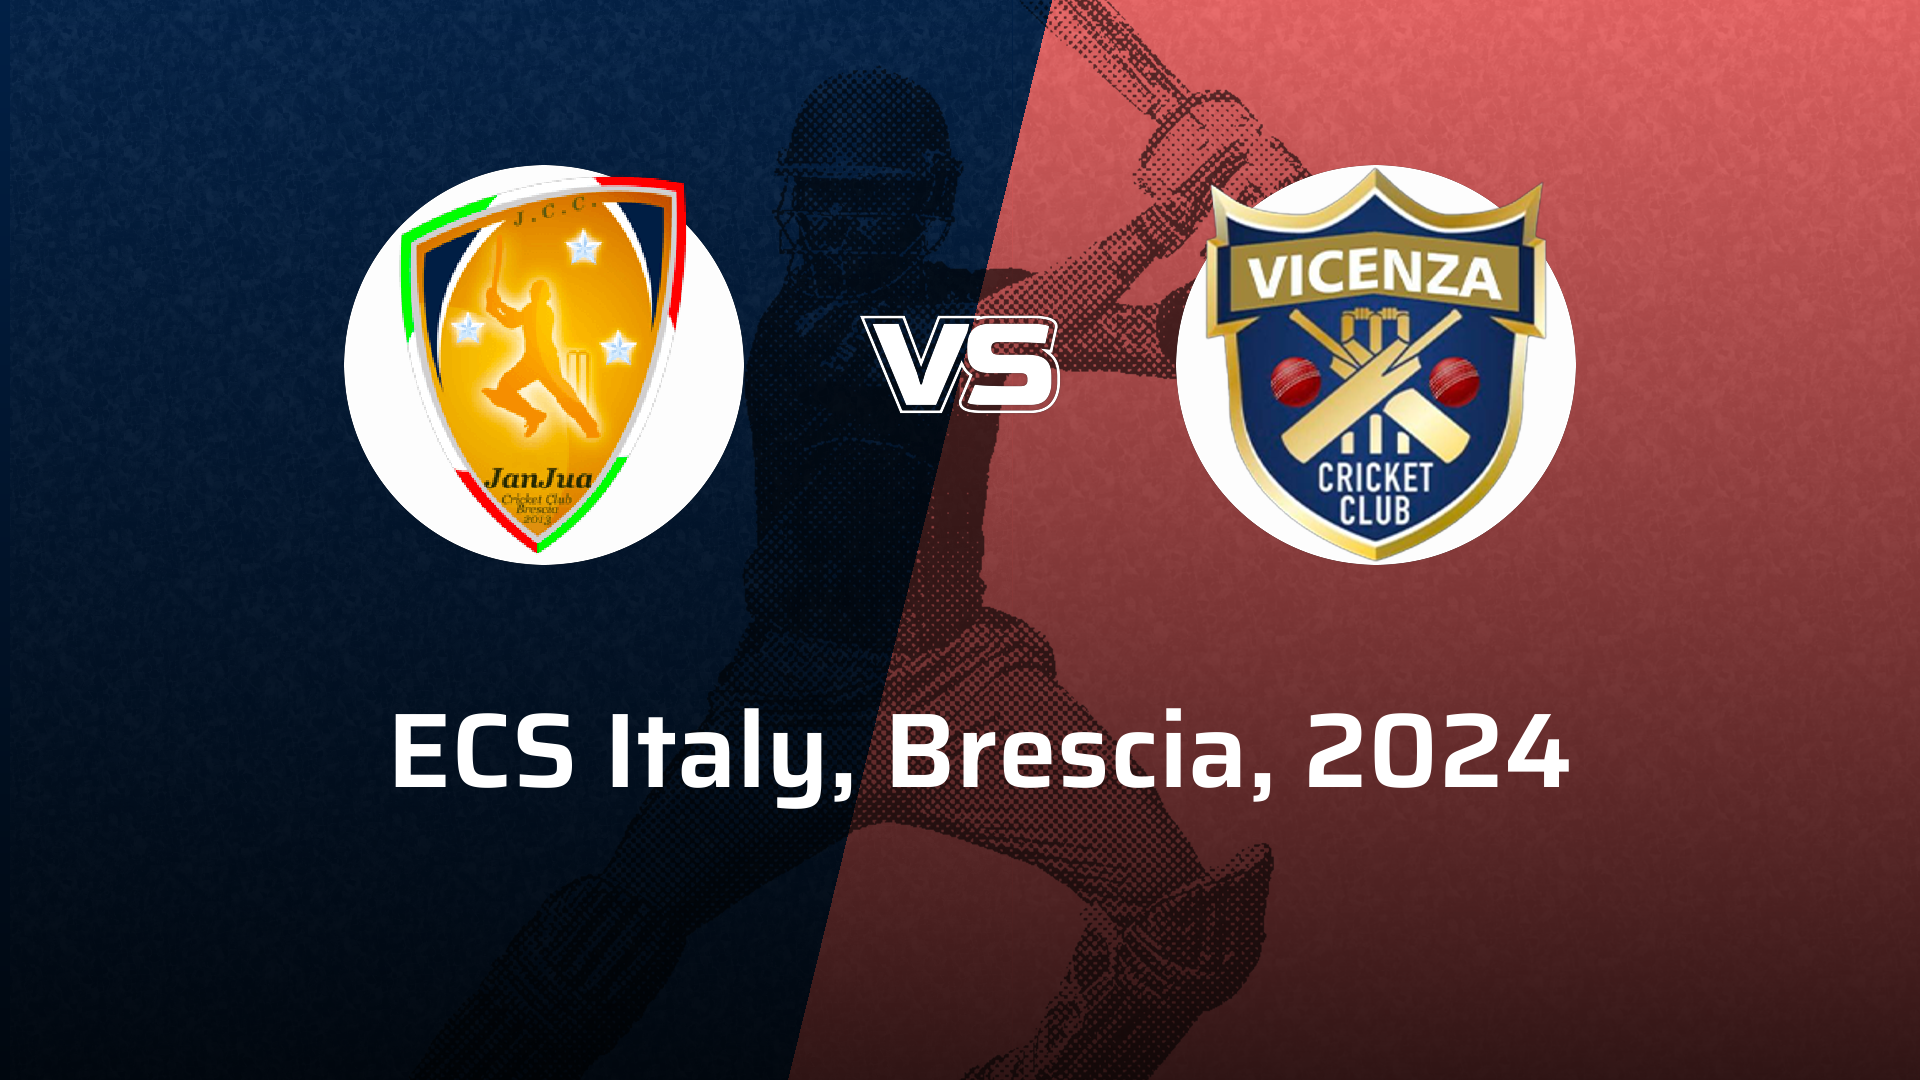 Vicenza VS Janjua Brescia